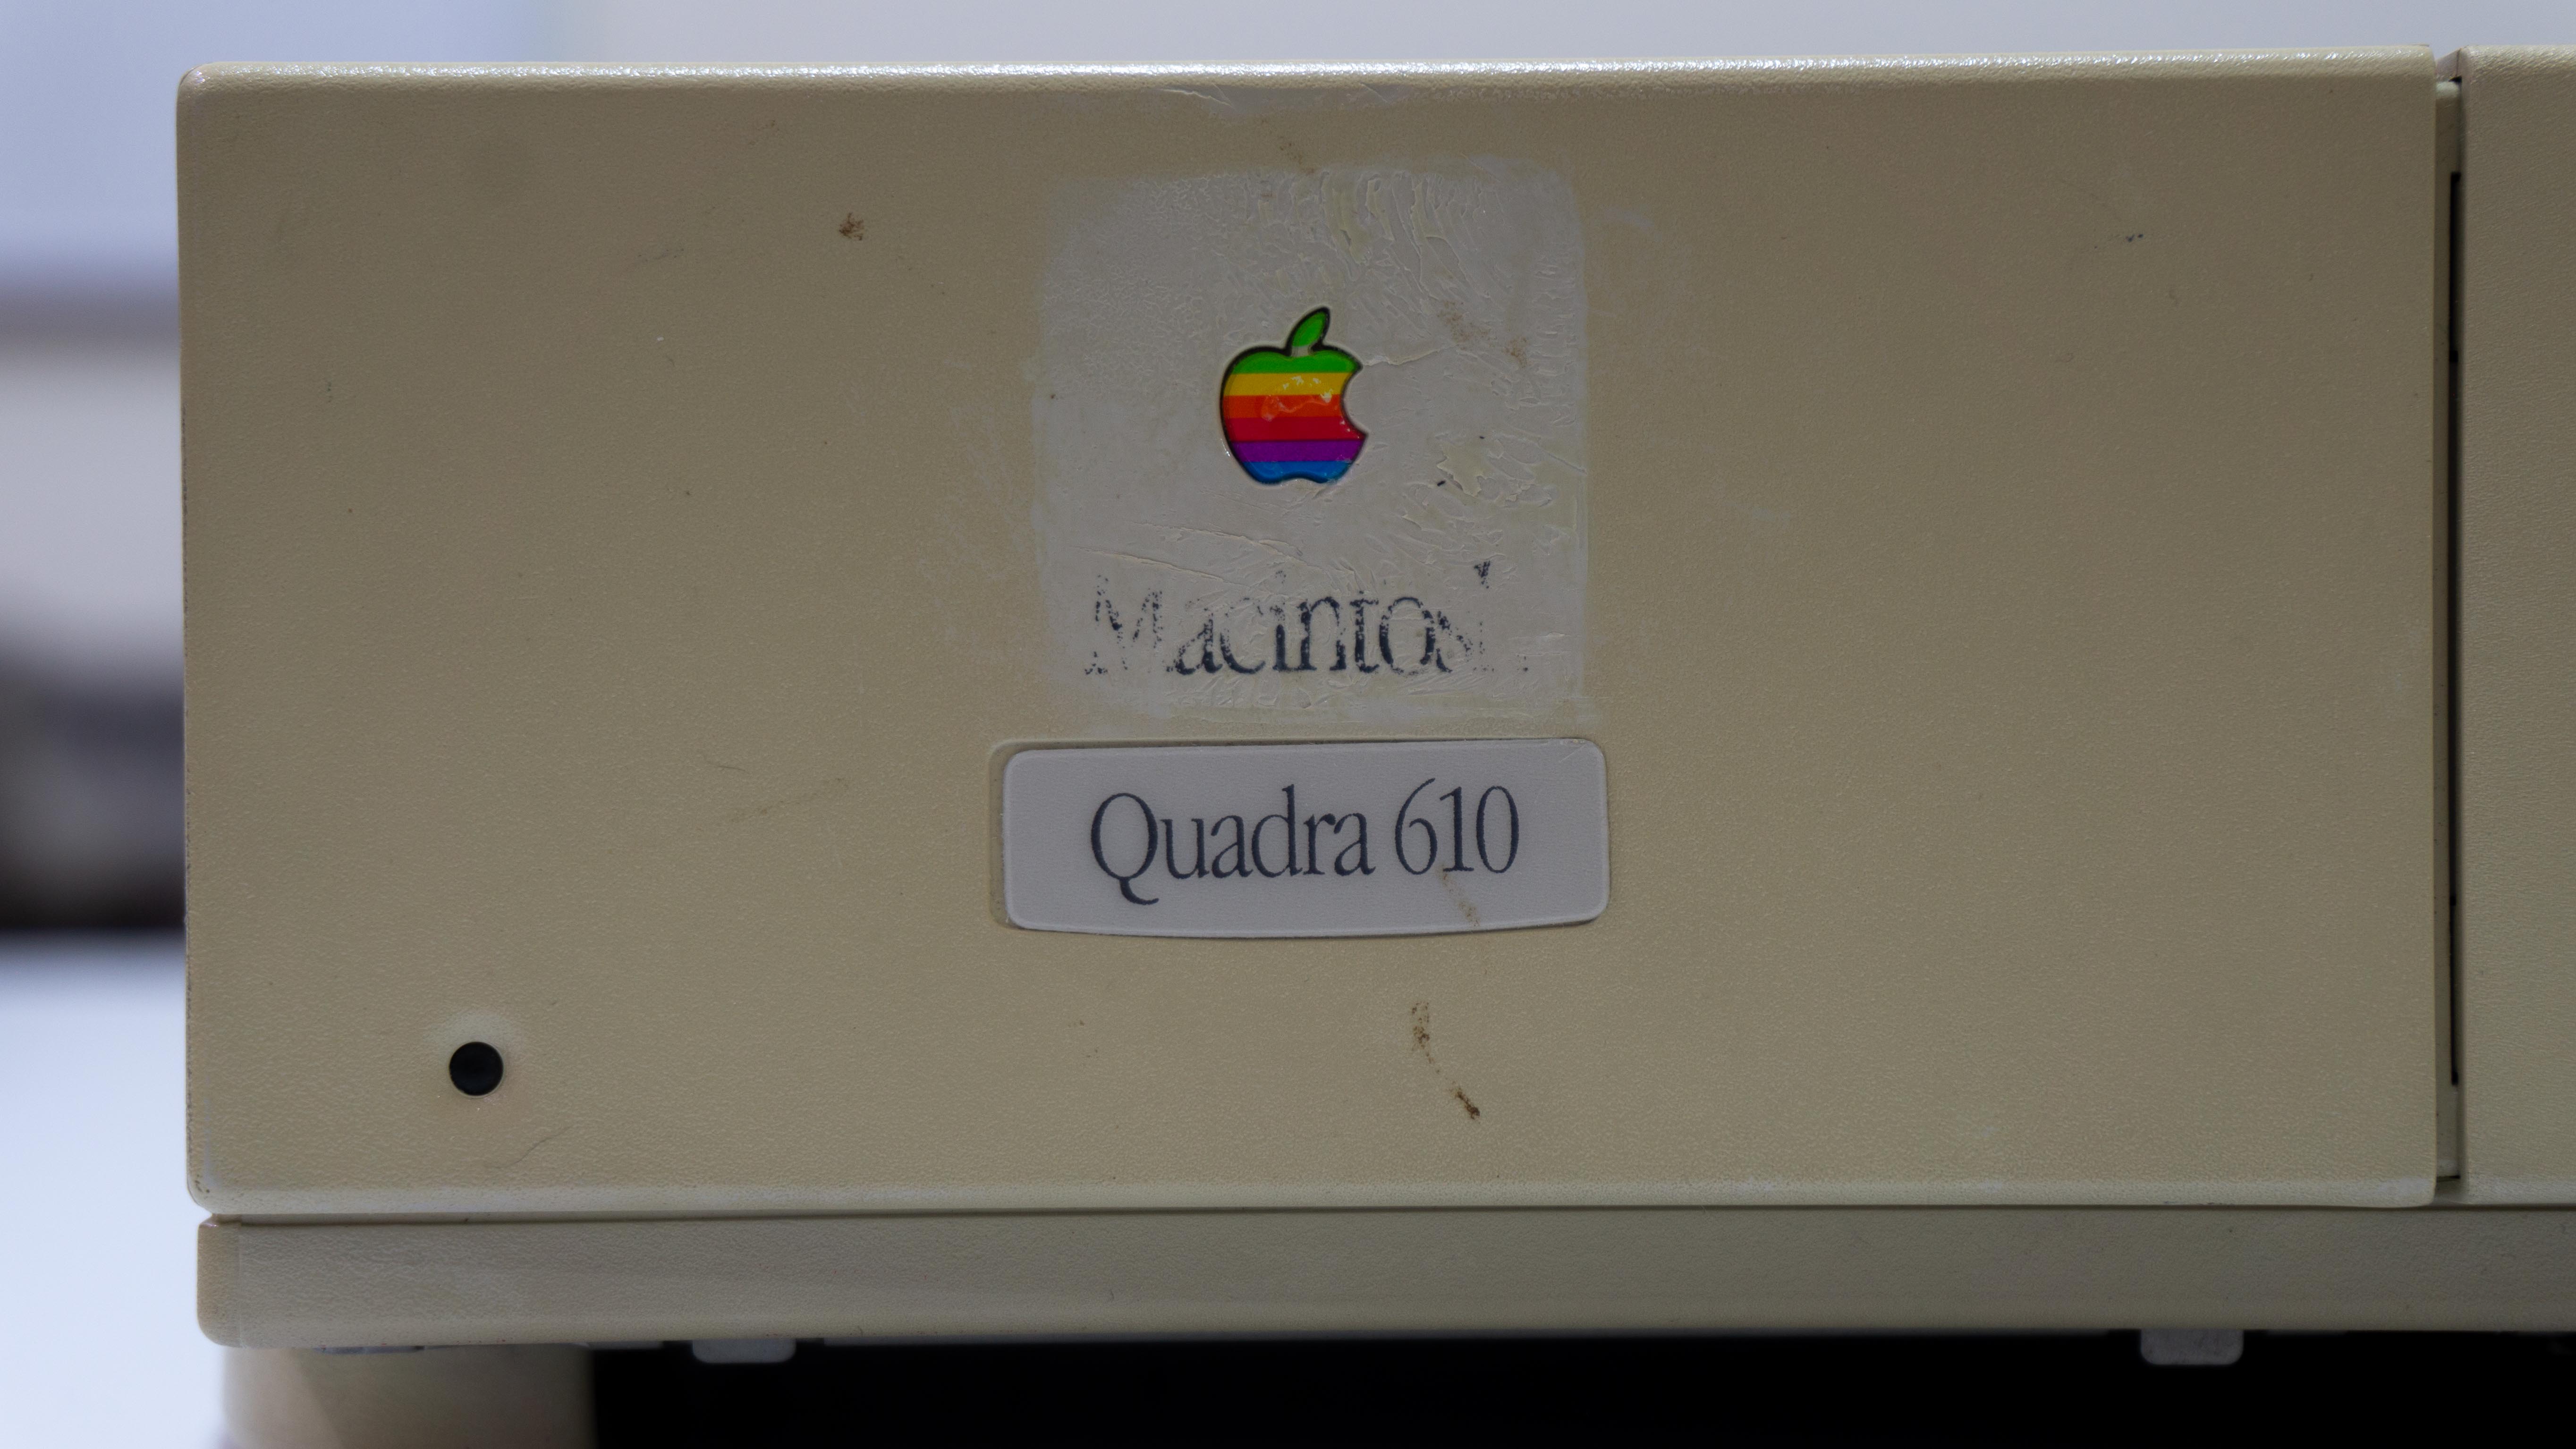 Quadra 610 nameplate (a bit scuffed up)